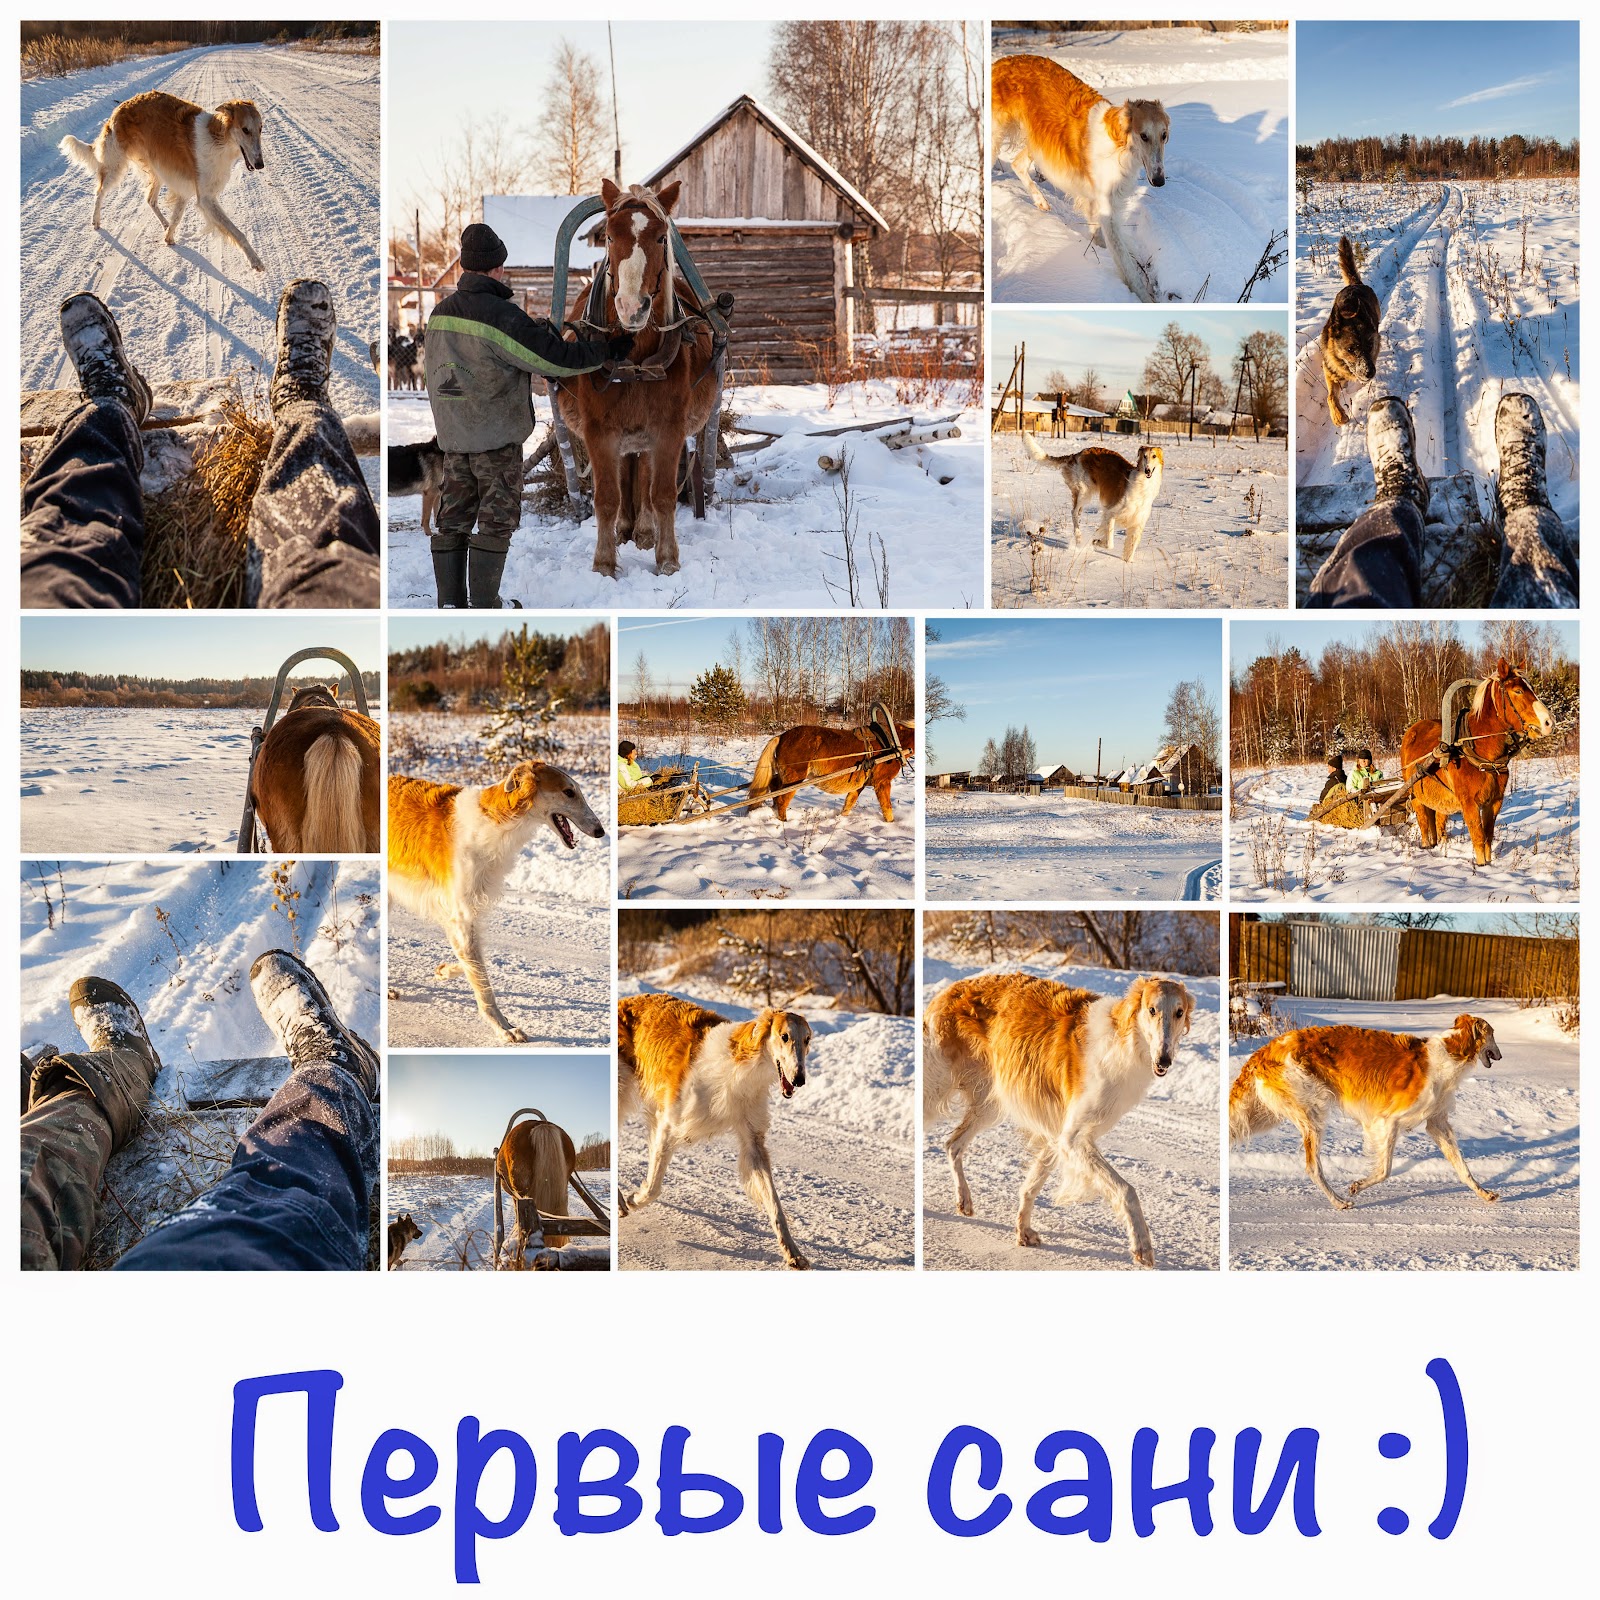 Конные прогулки и катания на санях в Твери и Тверской области.